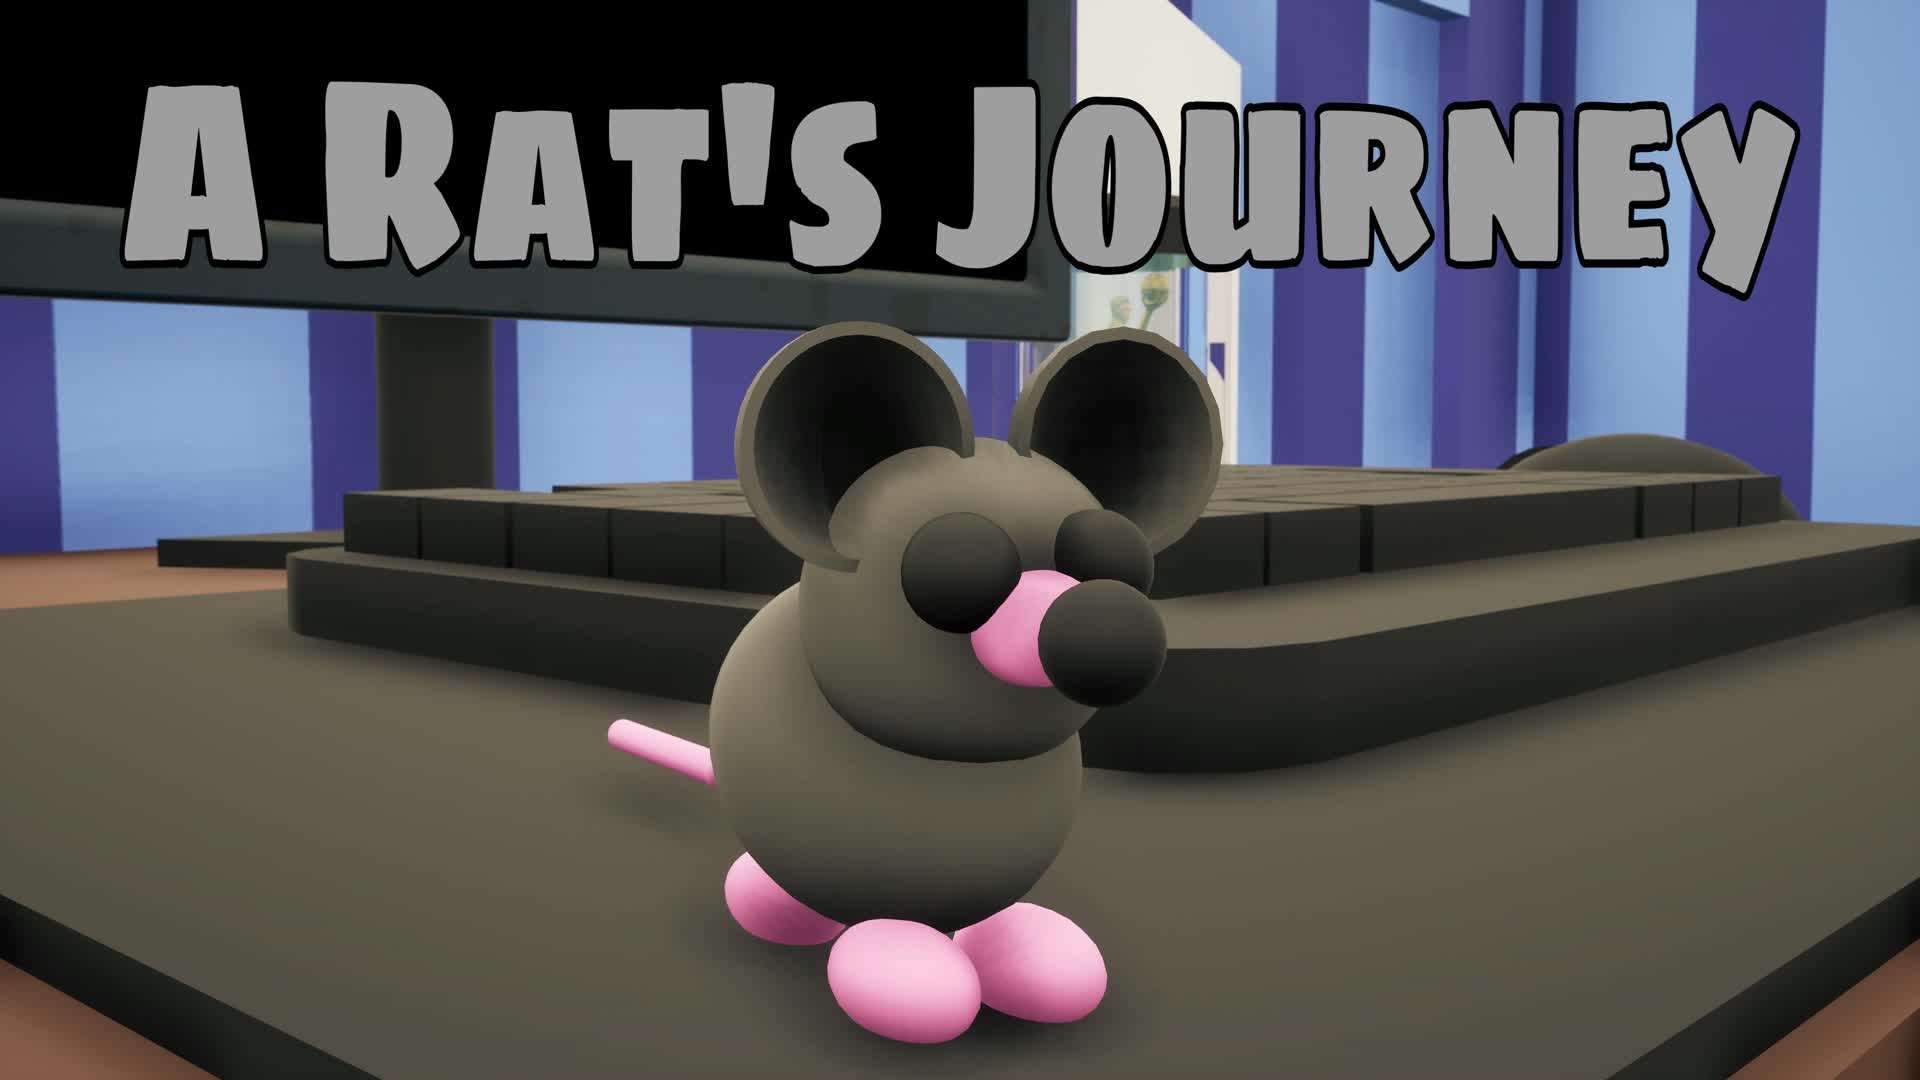 A Rat's Journey